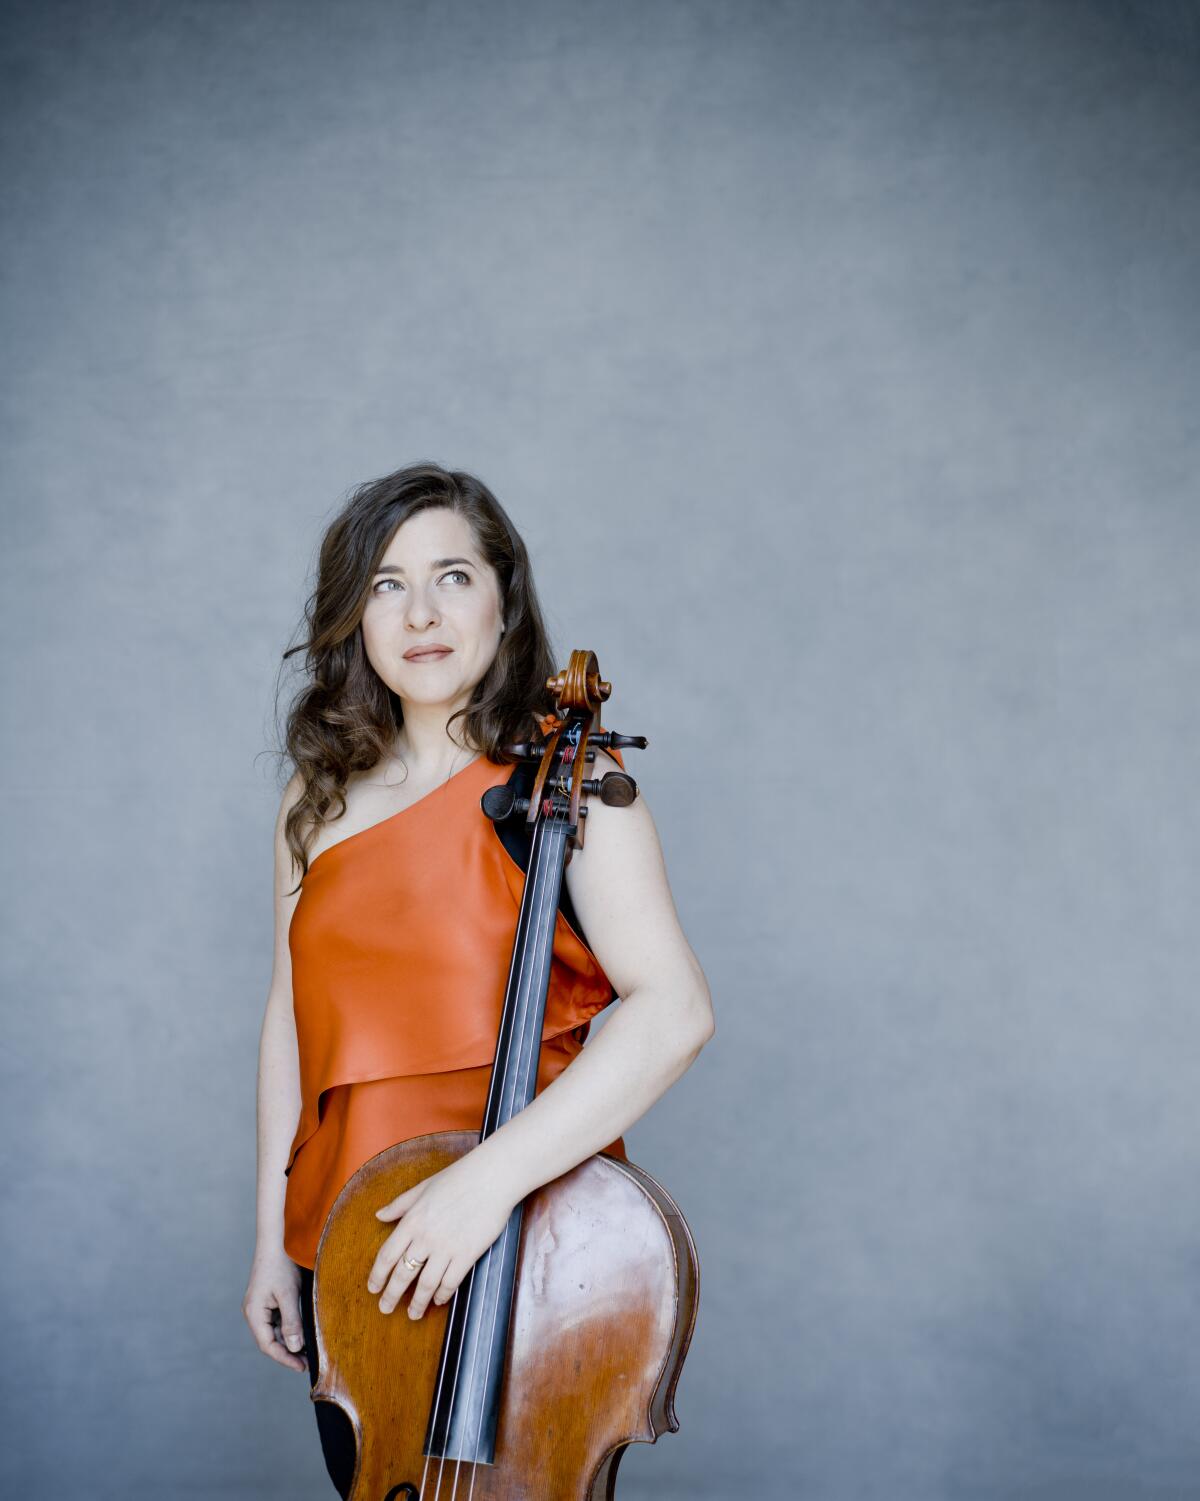 Cellist Alisa Weilerstein.